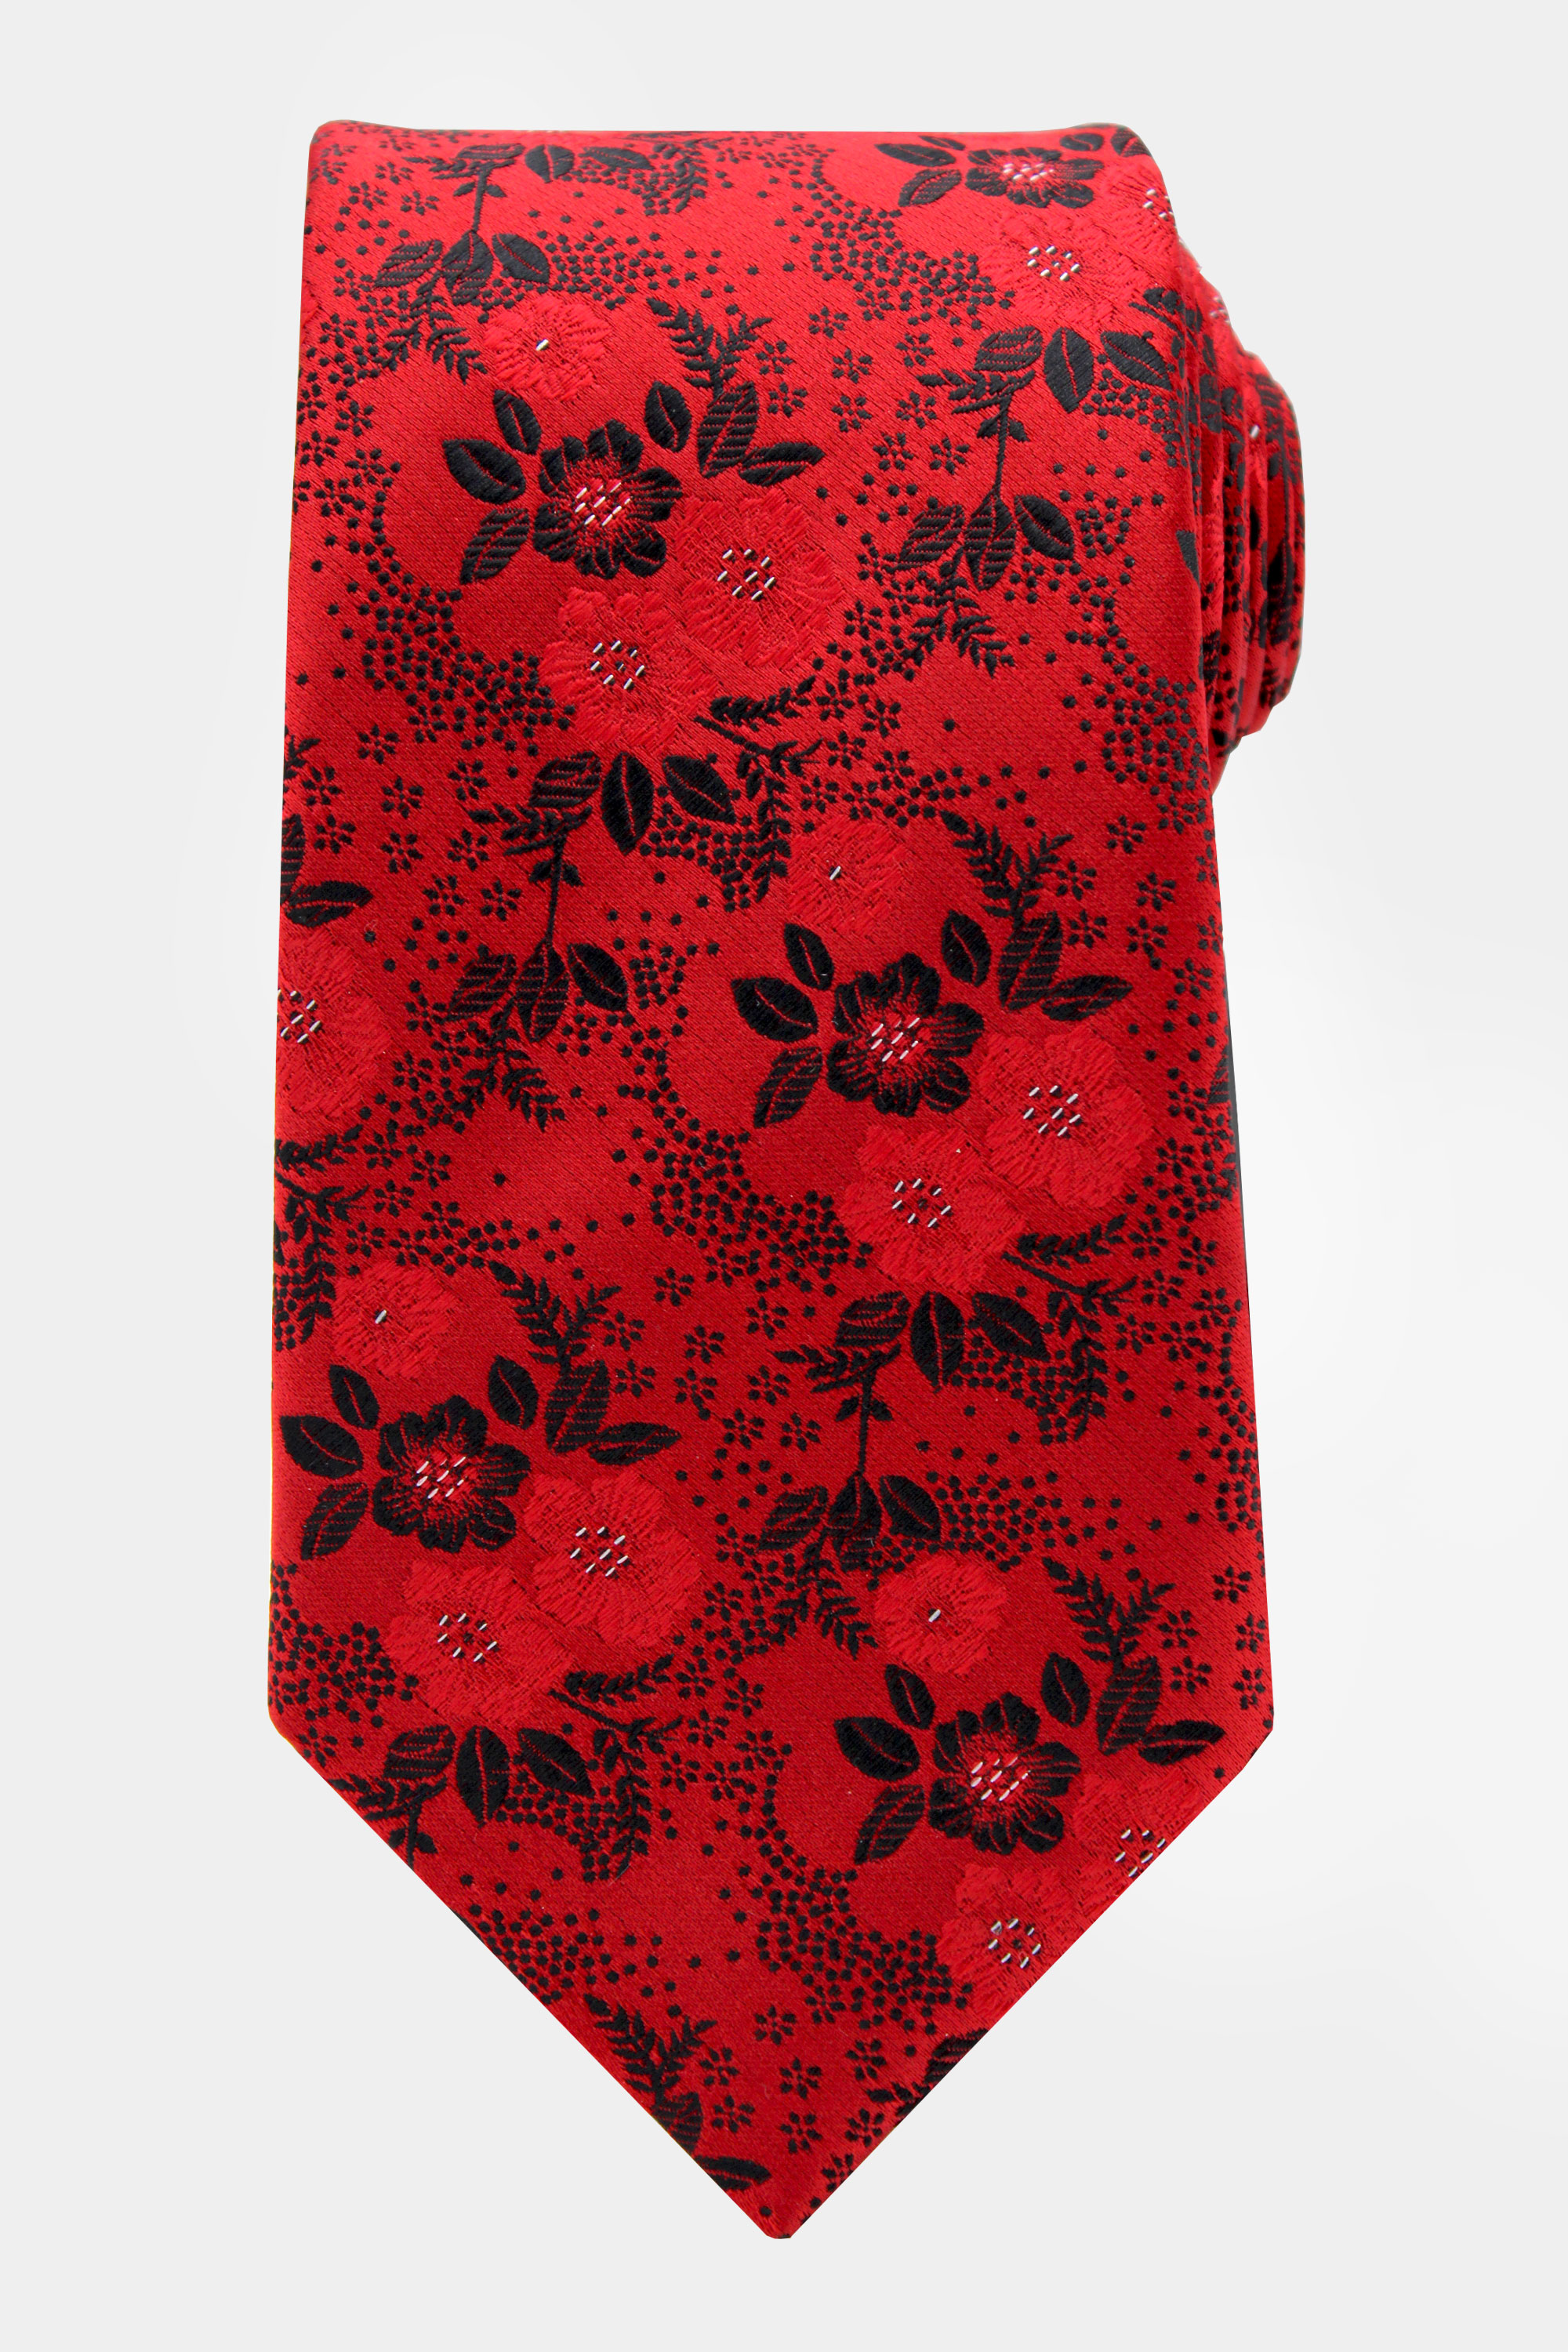 Red-Floral-Tie-from-Gentlemansguru.com